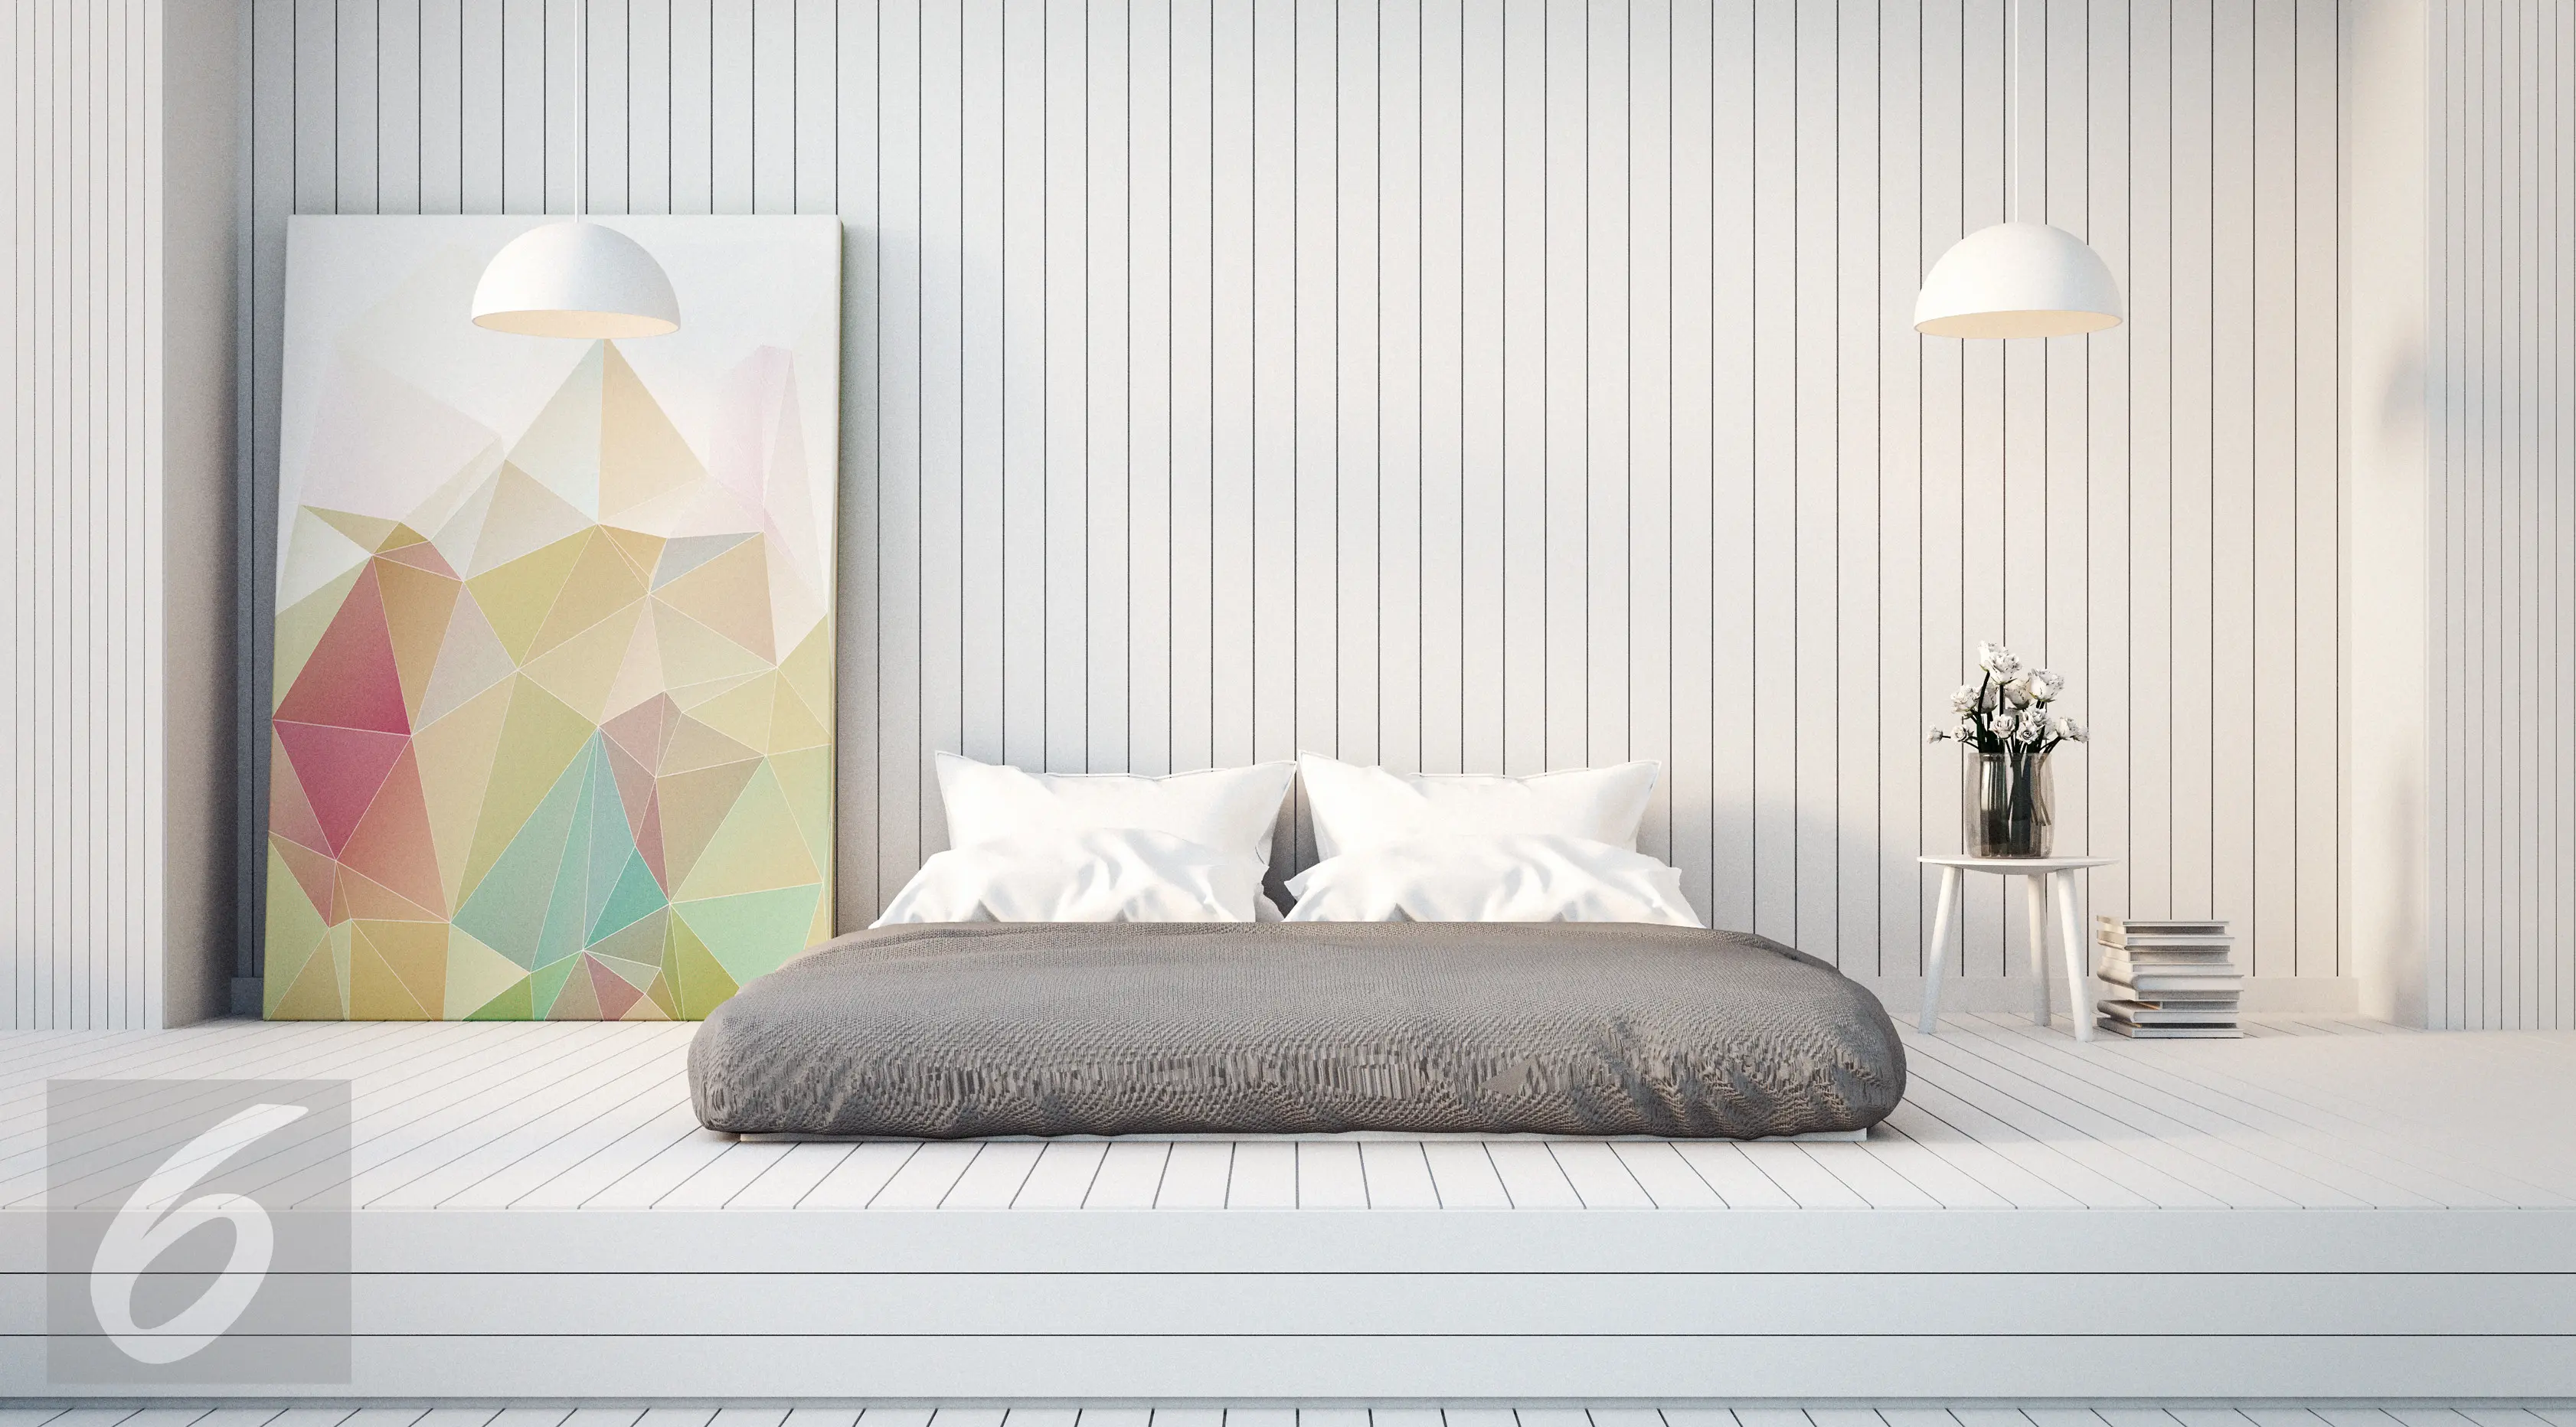 ilustrasi foto stylish bed room/ kamar tidur (iStockphoto)